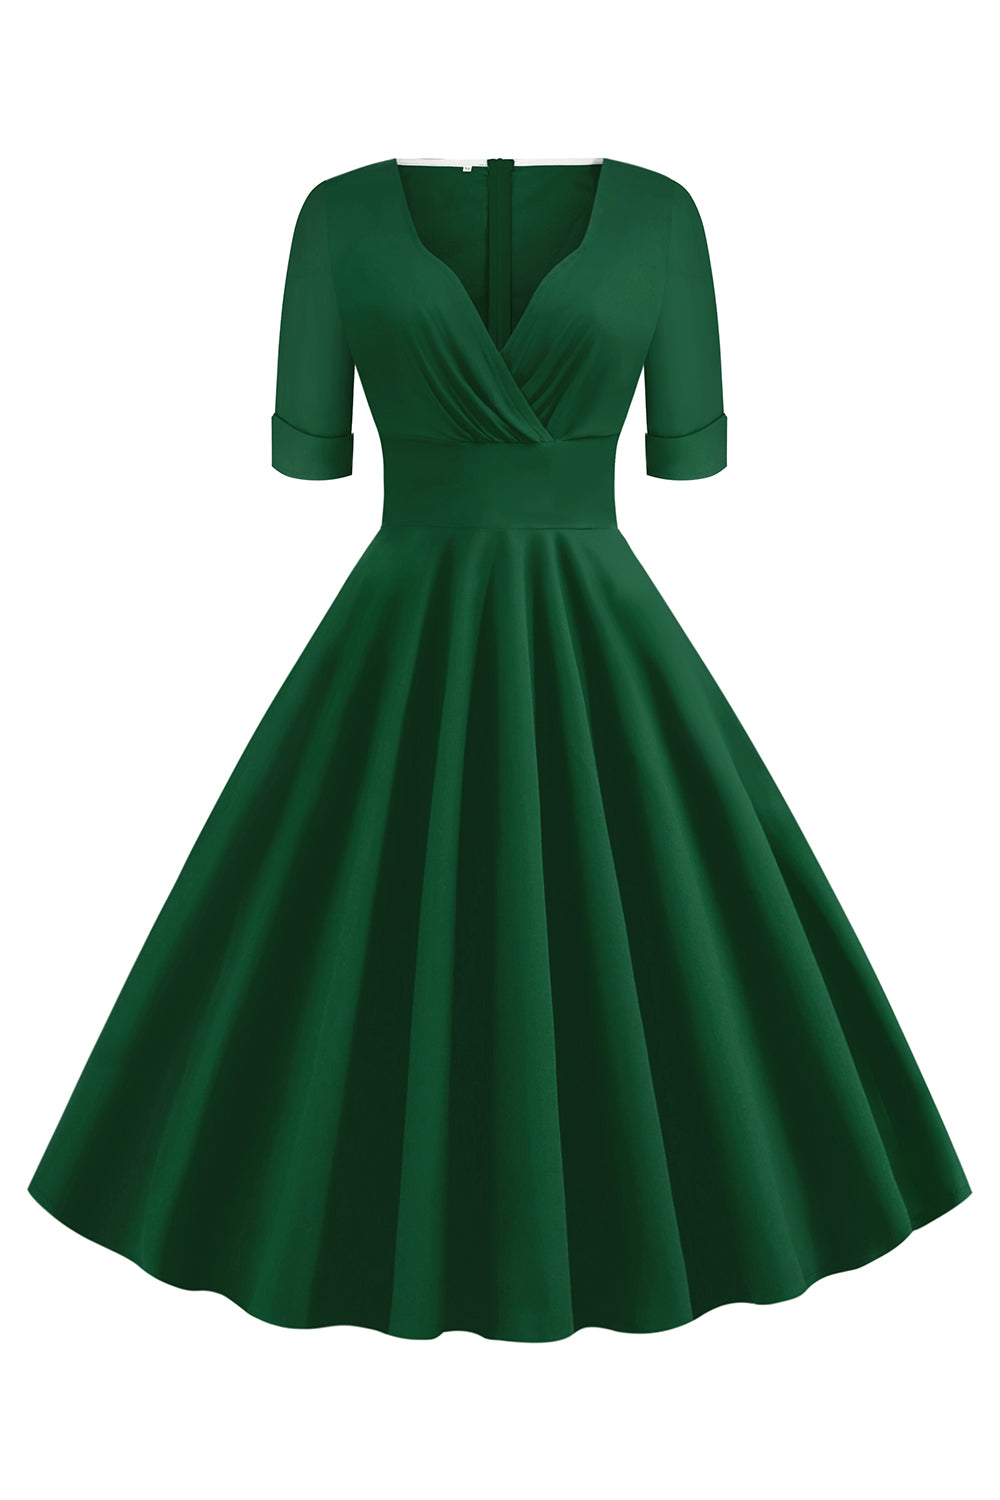 Green V-Neck Short Sleeves 1950s Swing Dress